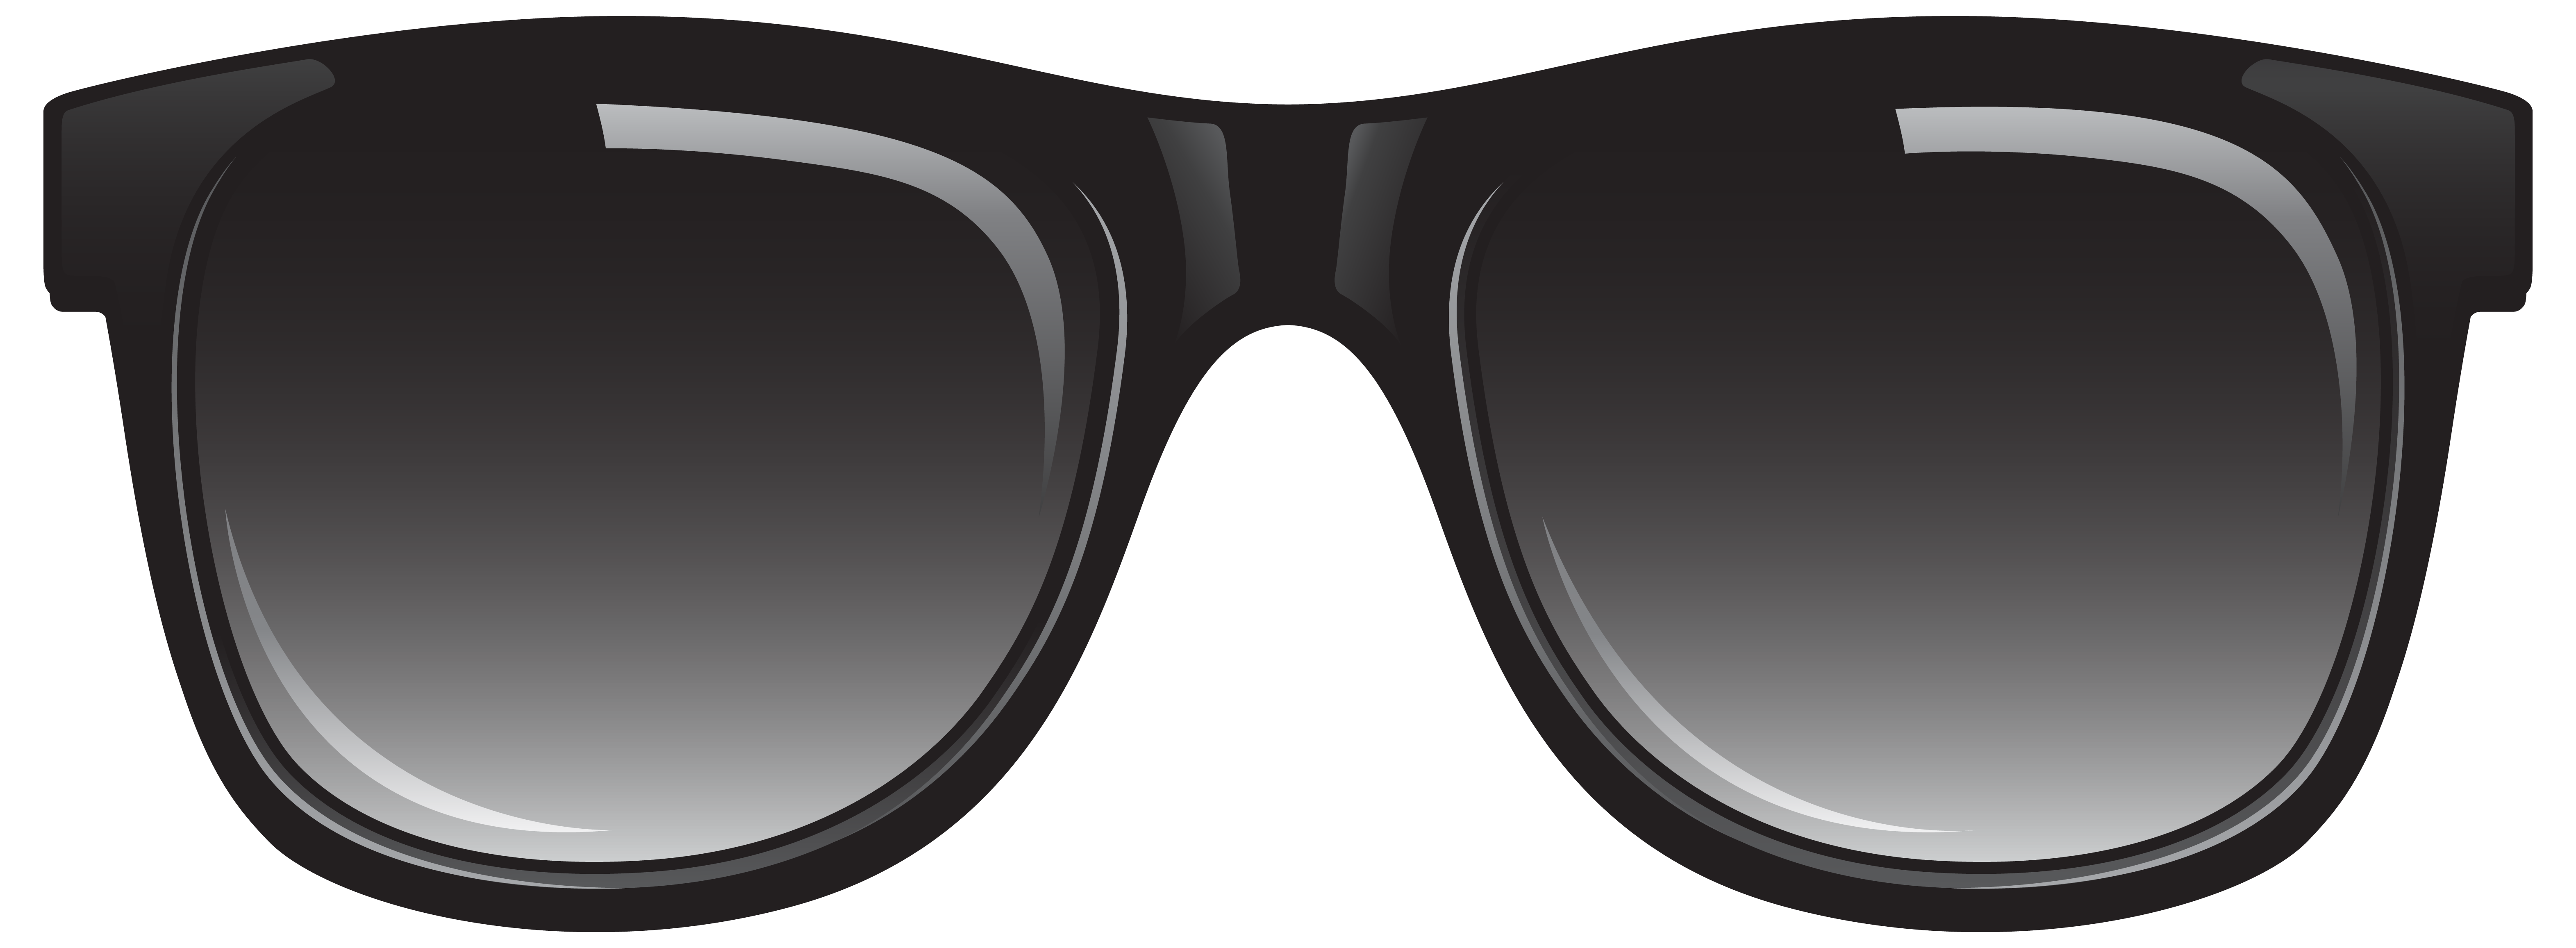 Black Glasses Download PNG Image